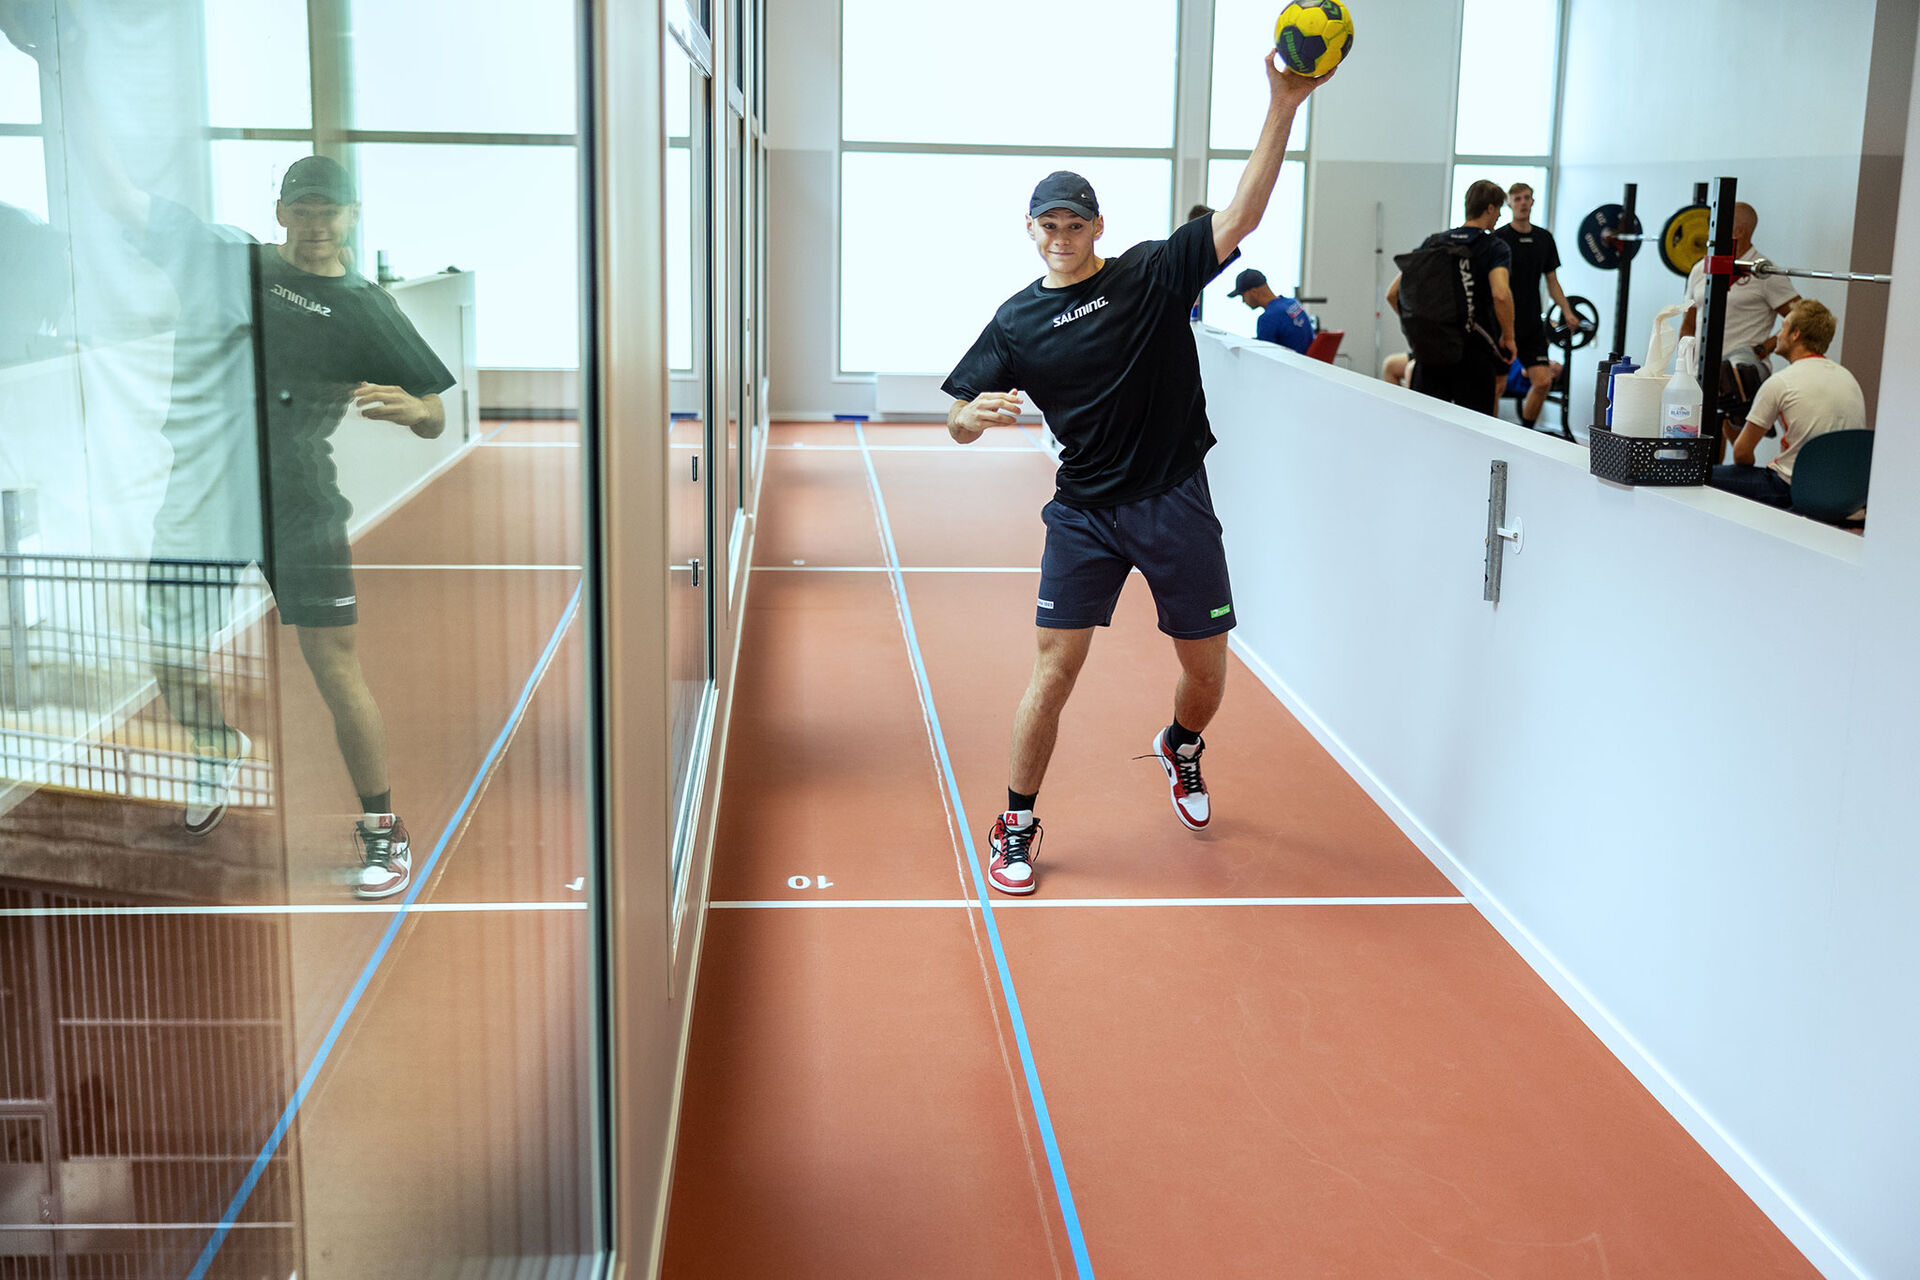 Bildet viser håndballspiller som tester sin skuddhastighet